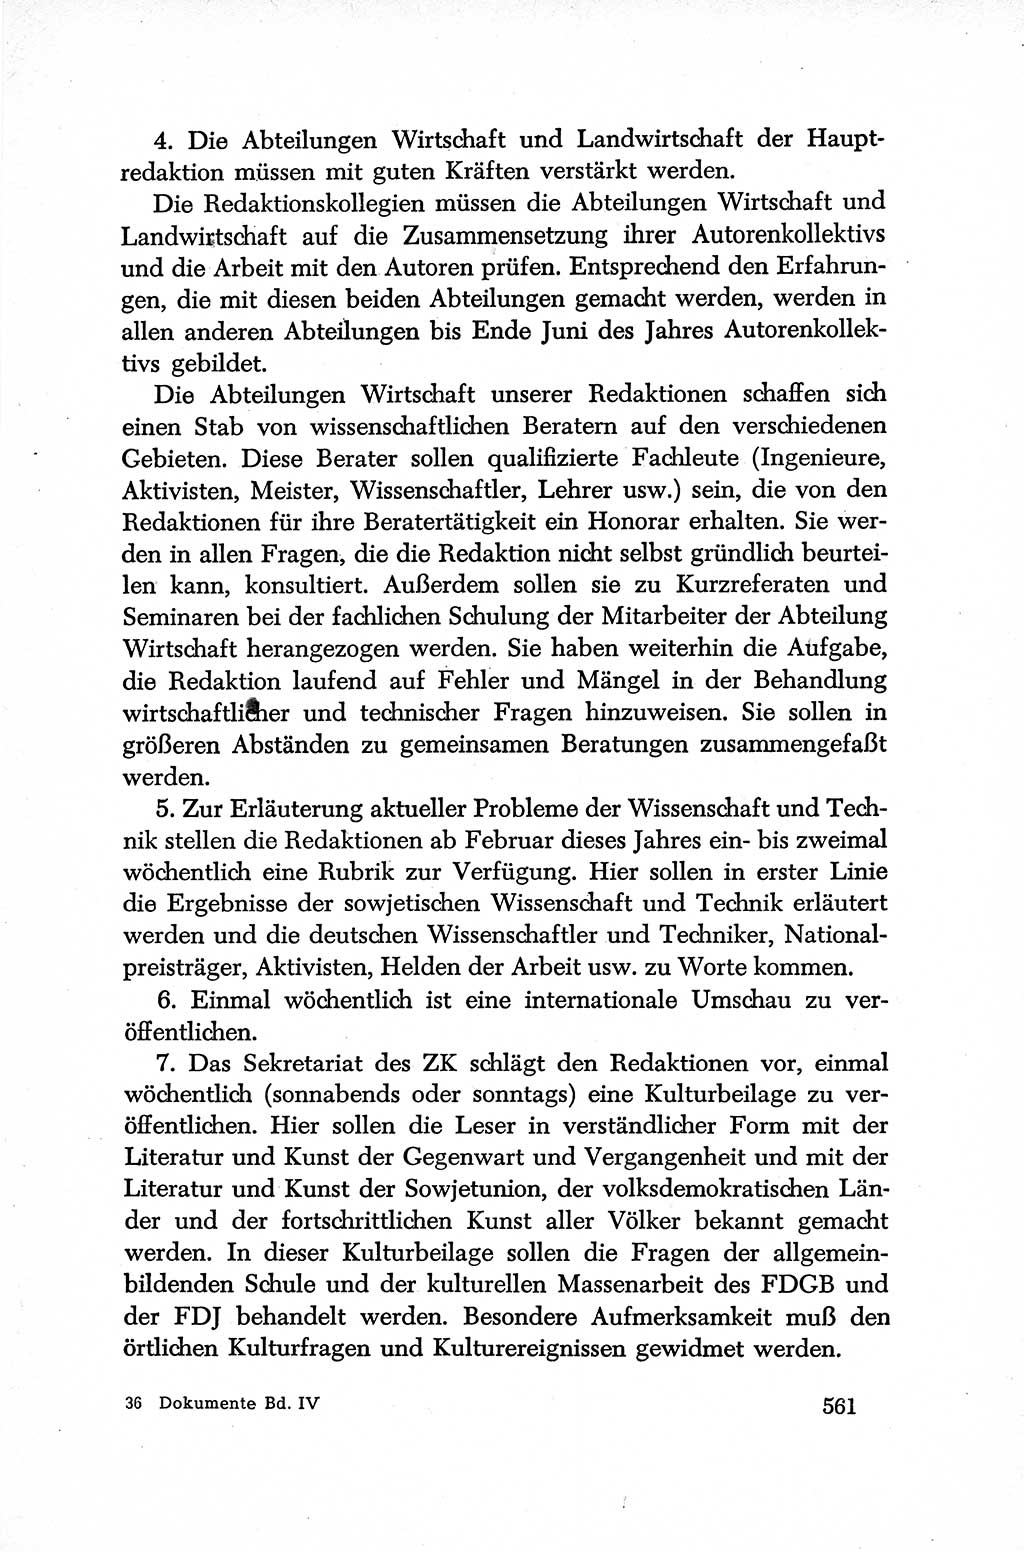 Dokumente der Sozialistischen Einheitspartei Deutschlands (SED) [Deutsche Demokratische Republik (DDR)] 1952-1953, Seite 561 (Dok. SED DDR 1952-1953, S. 561)